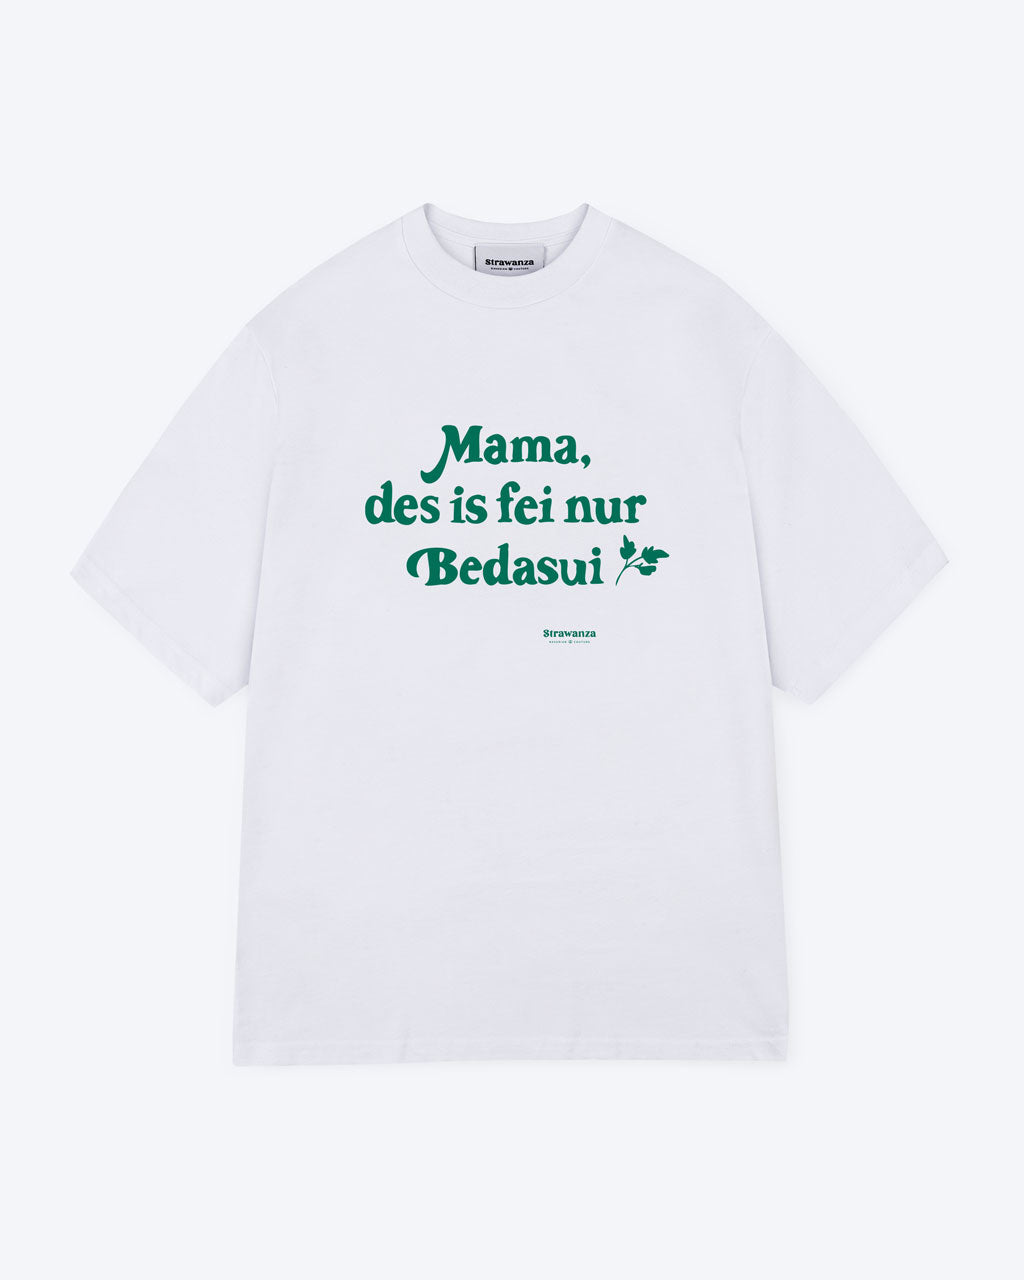 Ein weißes T-Shirt mit einem grünen, großen "Mama, des is fei nur Bedasui" Schriftzug als Vordermotiv. 